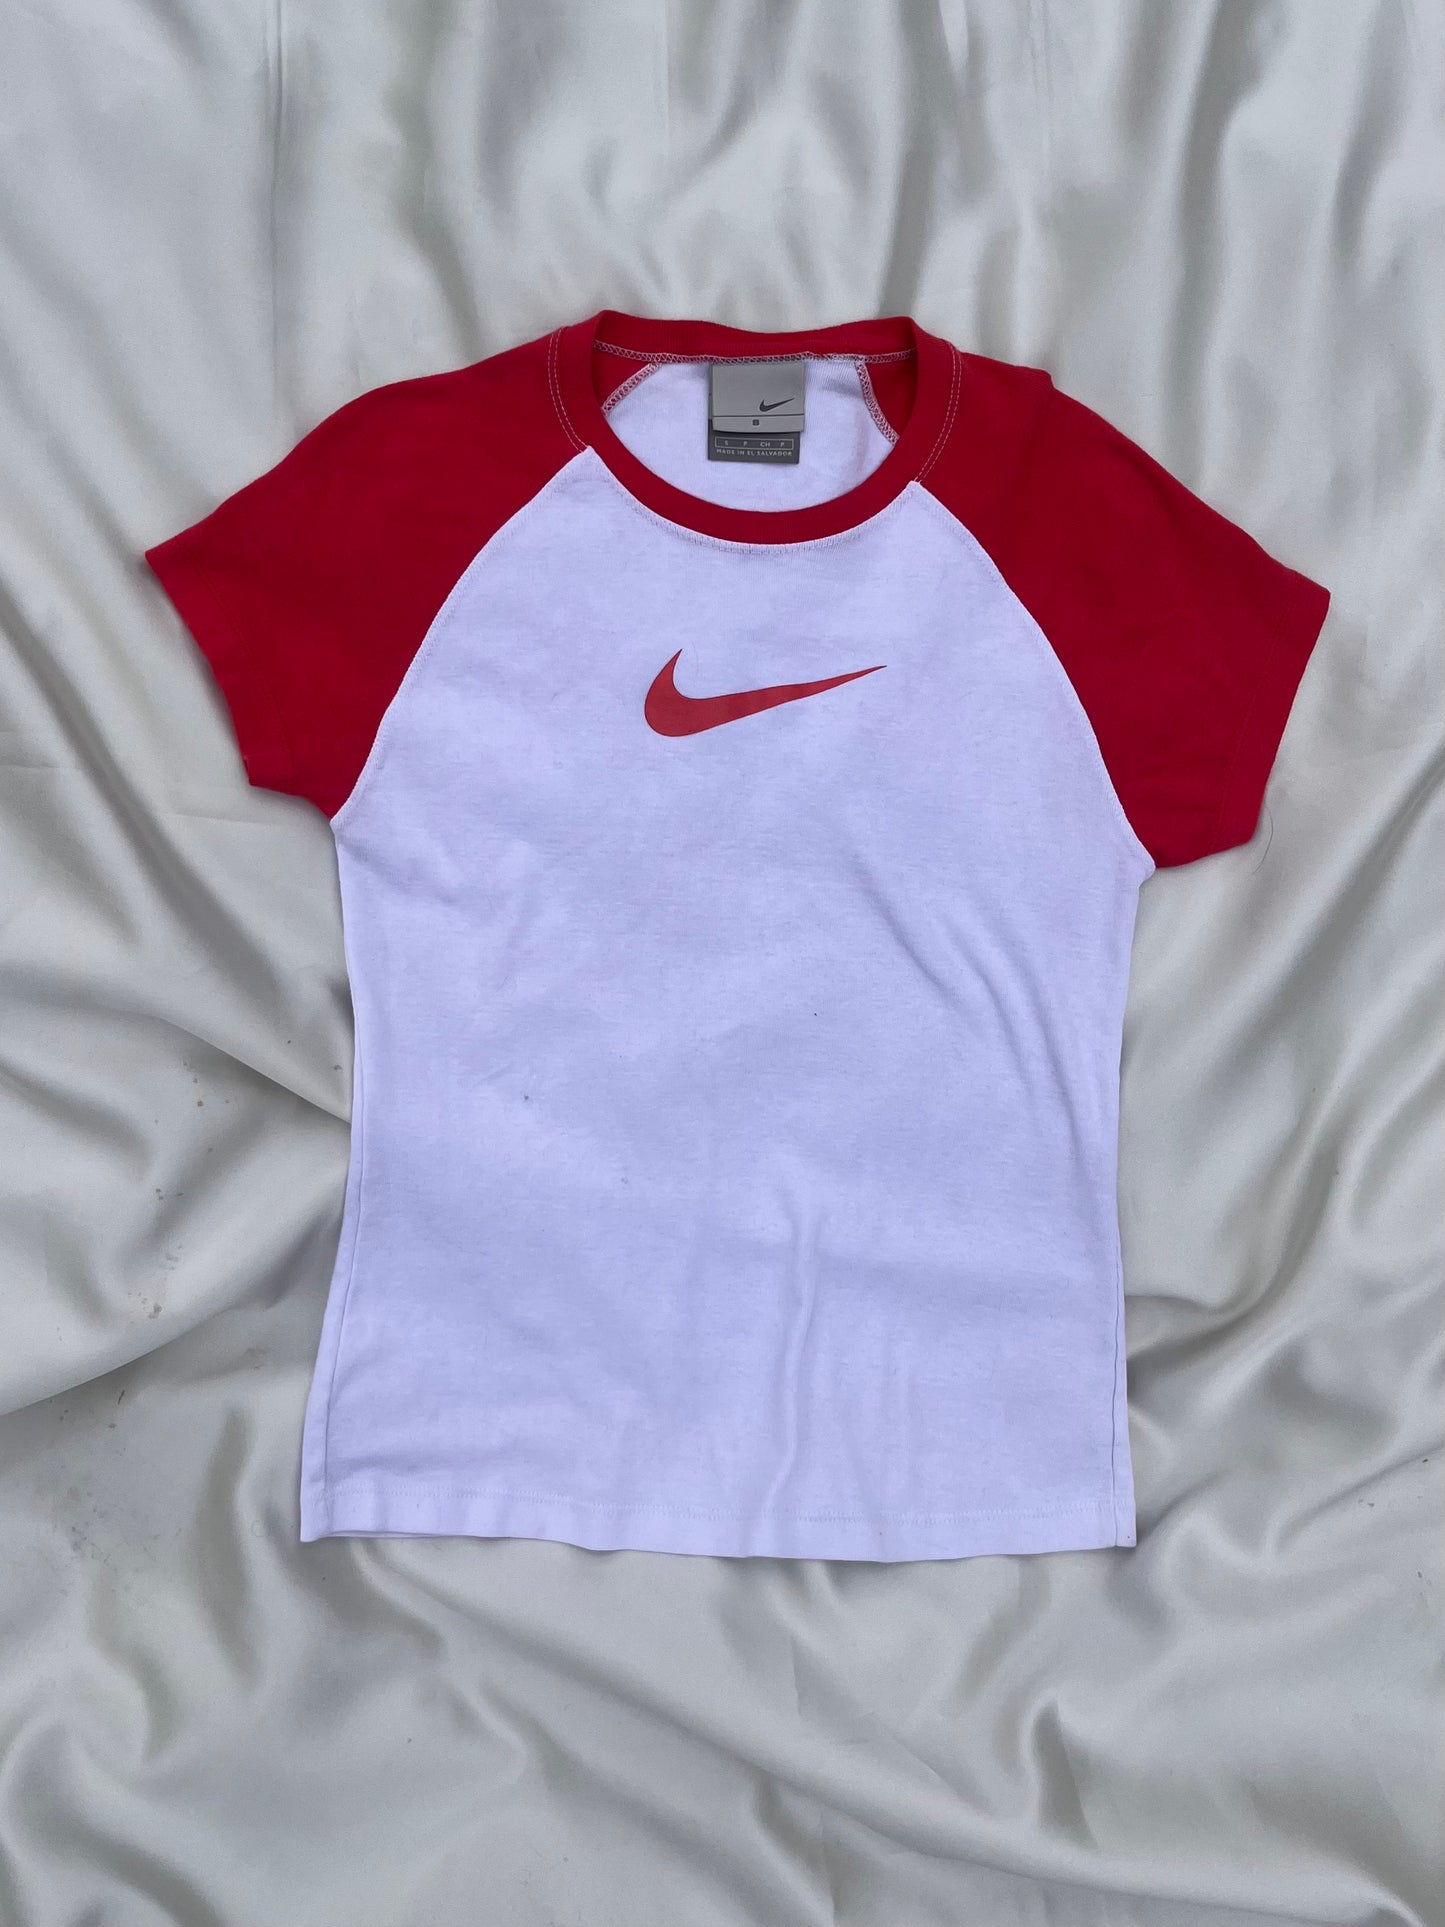 Nike “Baby” Tee